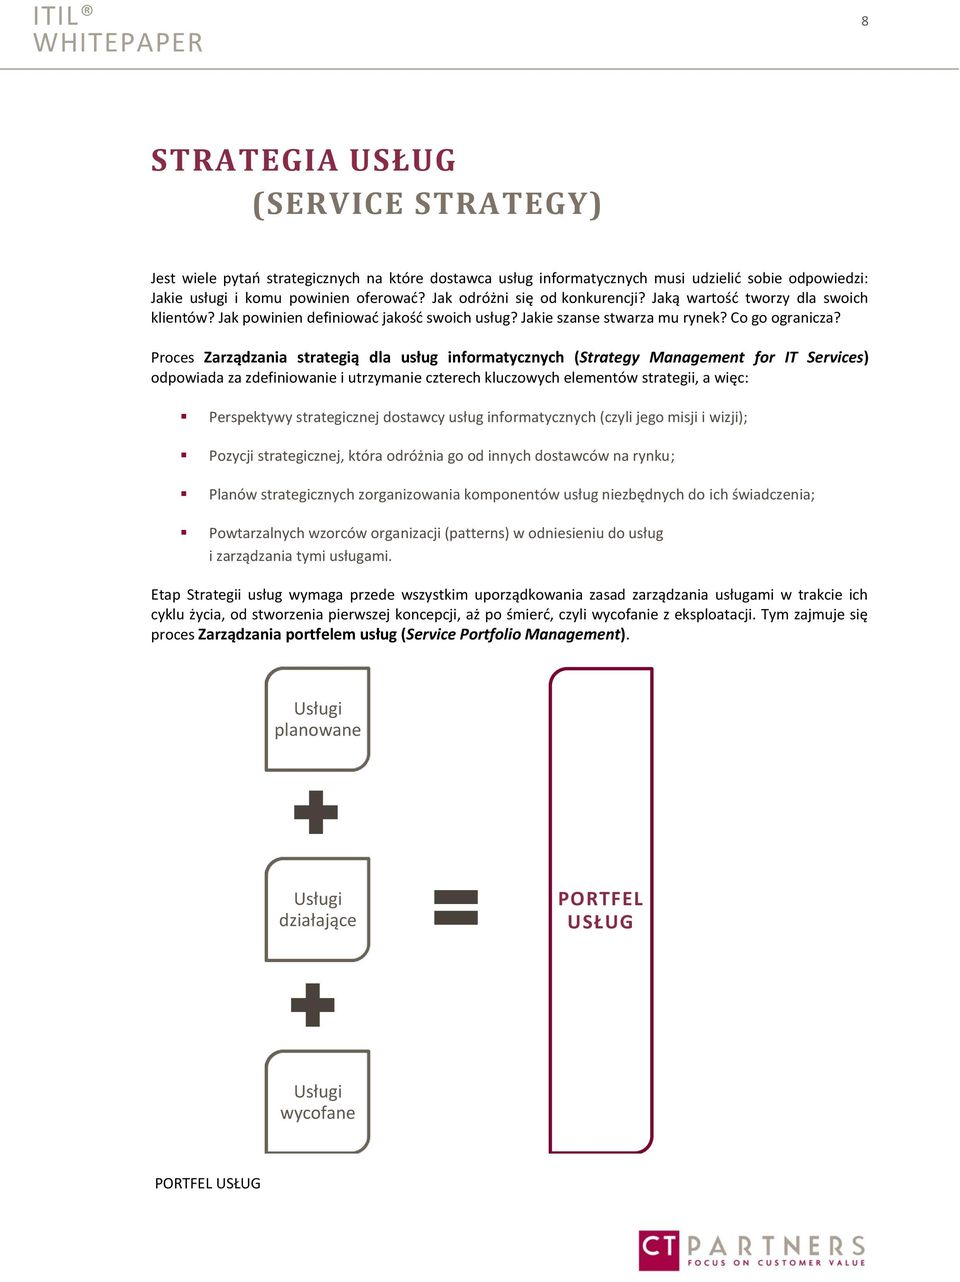 Proces Zarządzania strategią dla usług informatycznych (Strategy Management for IT Services) odpowiada za zdefiniowanie i utrzymanie czterech kluczowych elementów strategii, a więc: Perspektywy